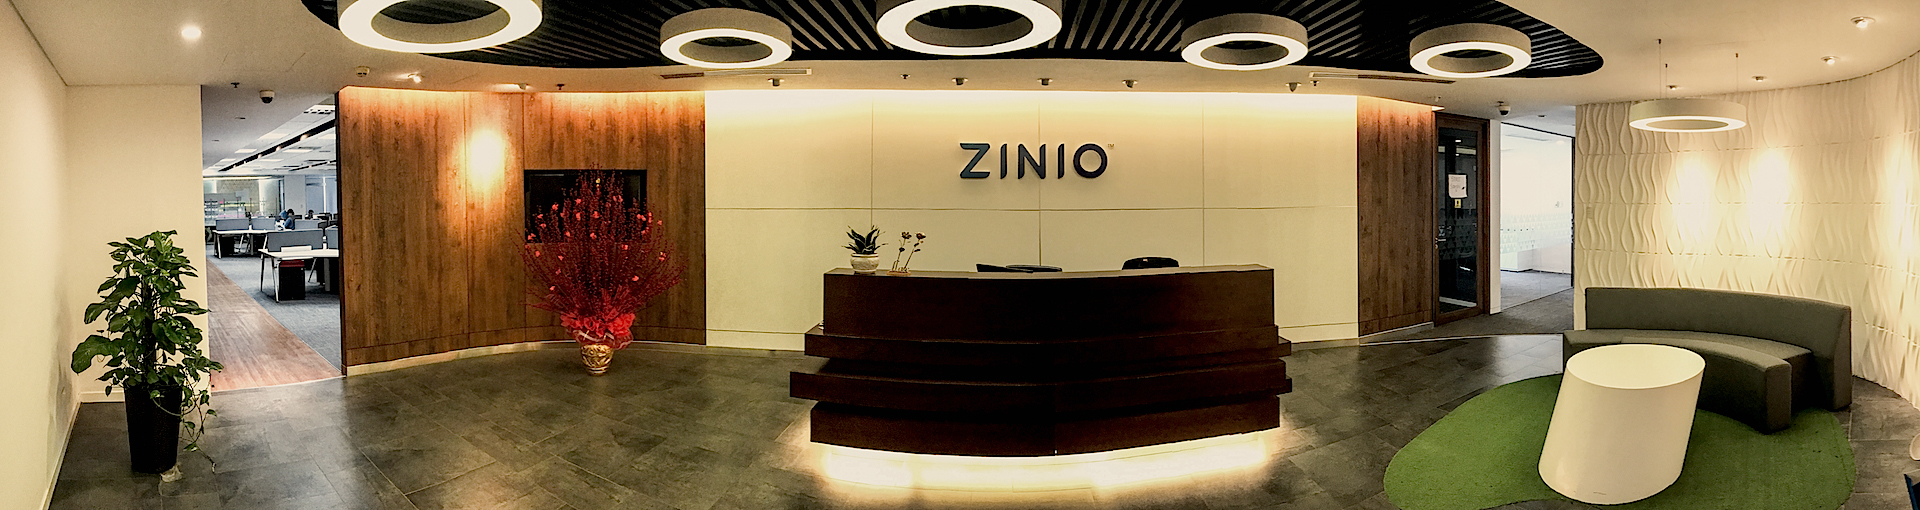 
                                                            Tìm việc làm tại Zinio Vietnam
                                                    